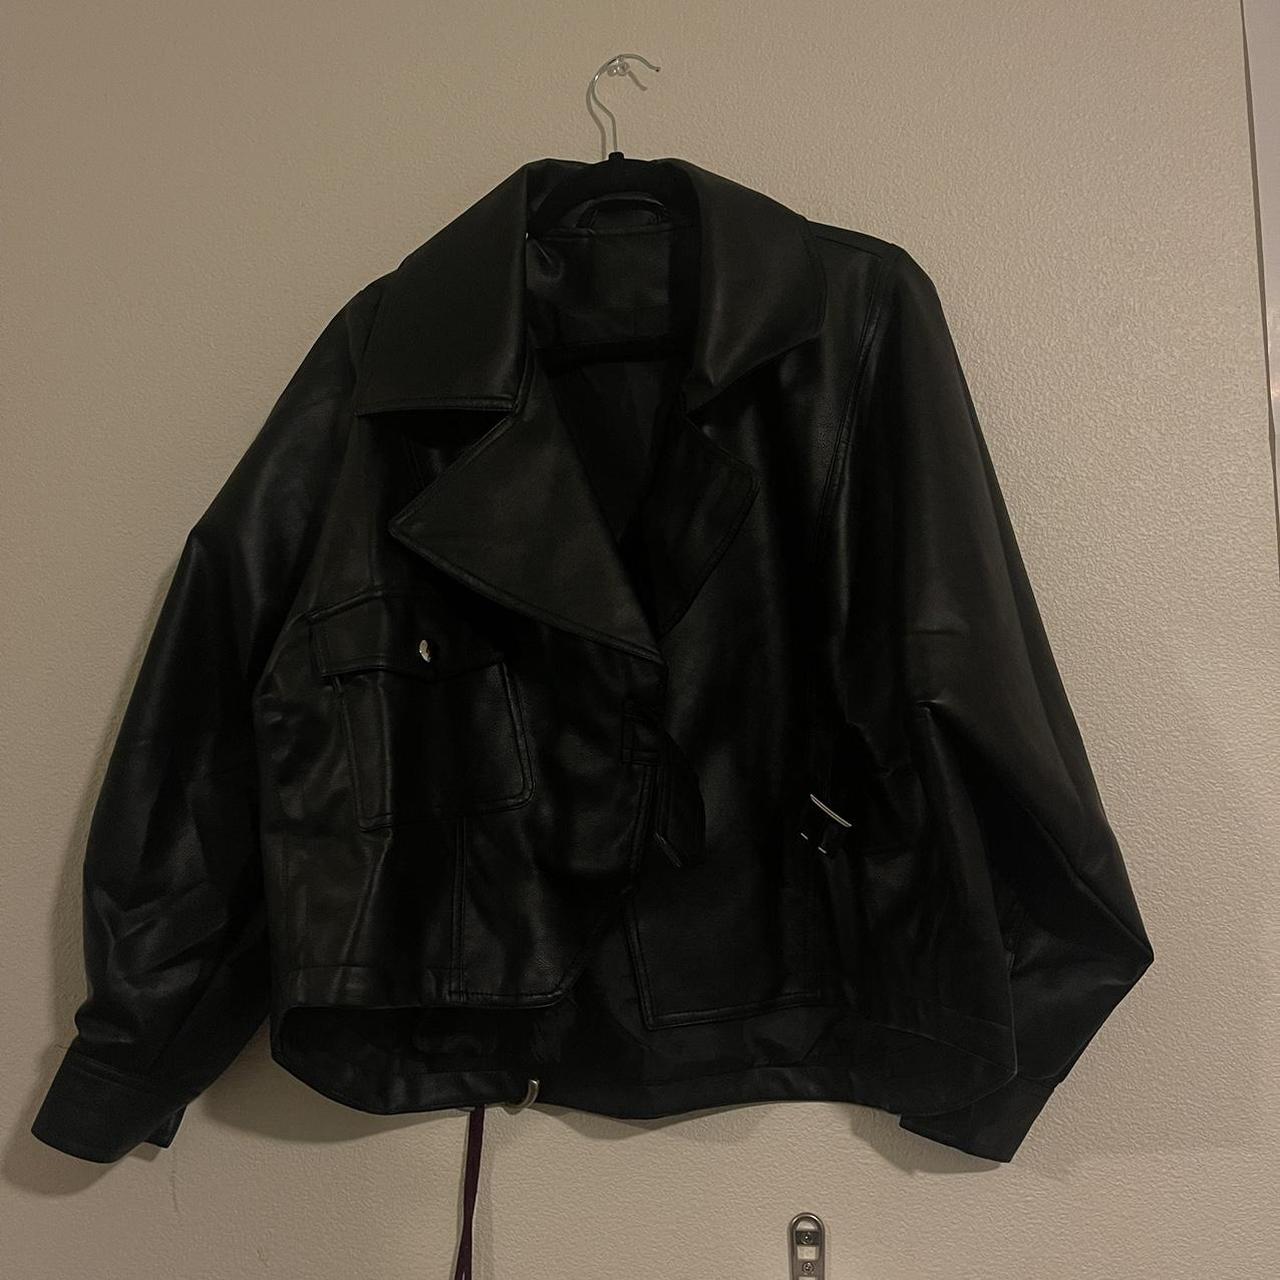 Black Leather Jacket Over sized Worn once - Depop